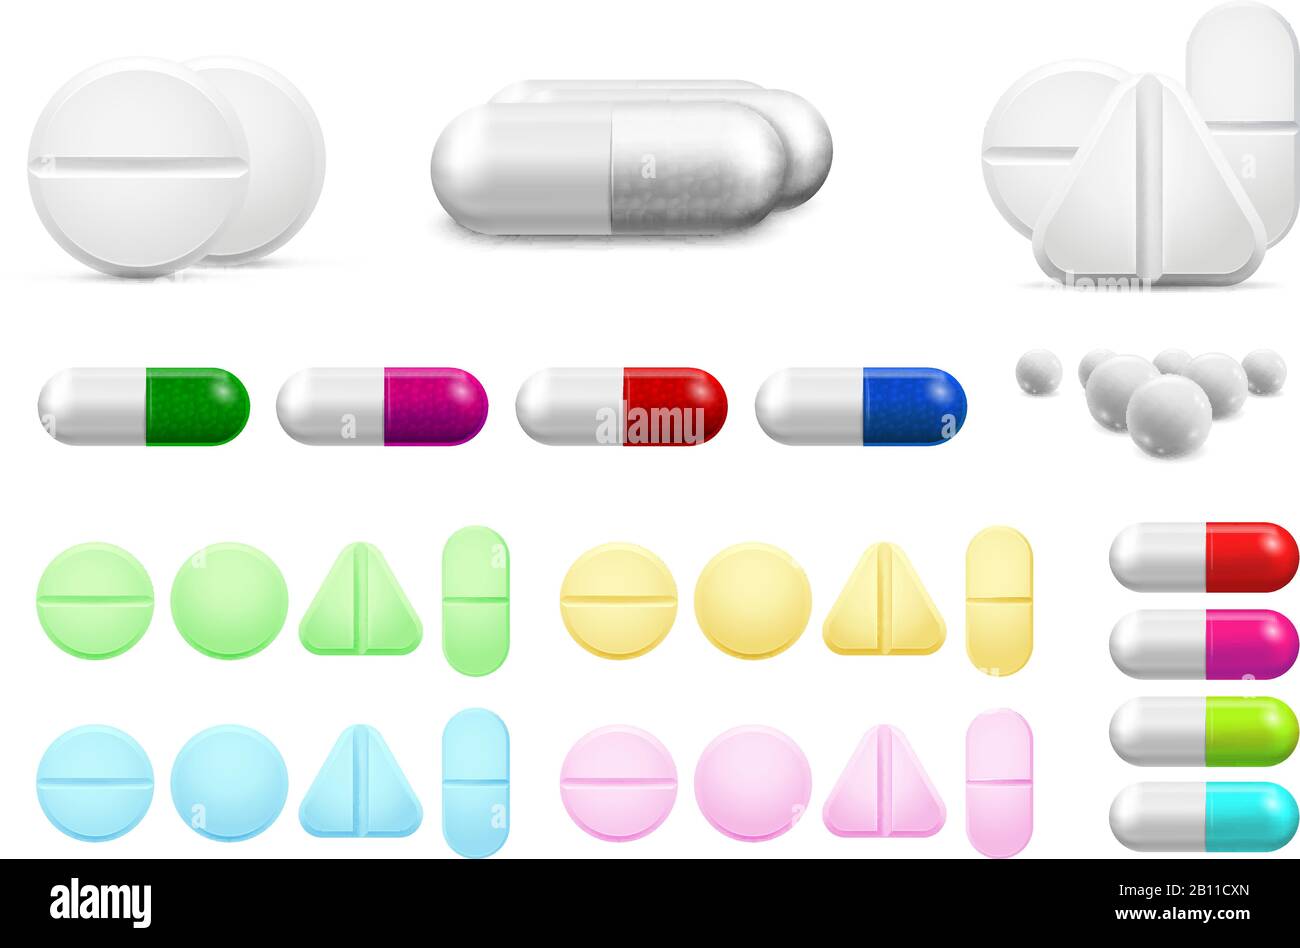 Isolierte weiße Pillen, Antibiotika oder schmerzstillende Medikamente im Gesundheitswesen. Vitaminpille, antibiotische Kapsel und Vektor-Set für pharmazeutische Arzneimittel Stock Vektor